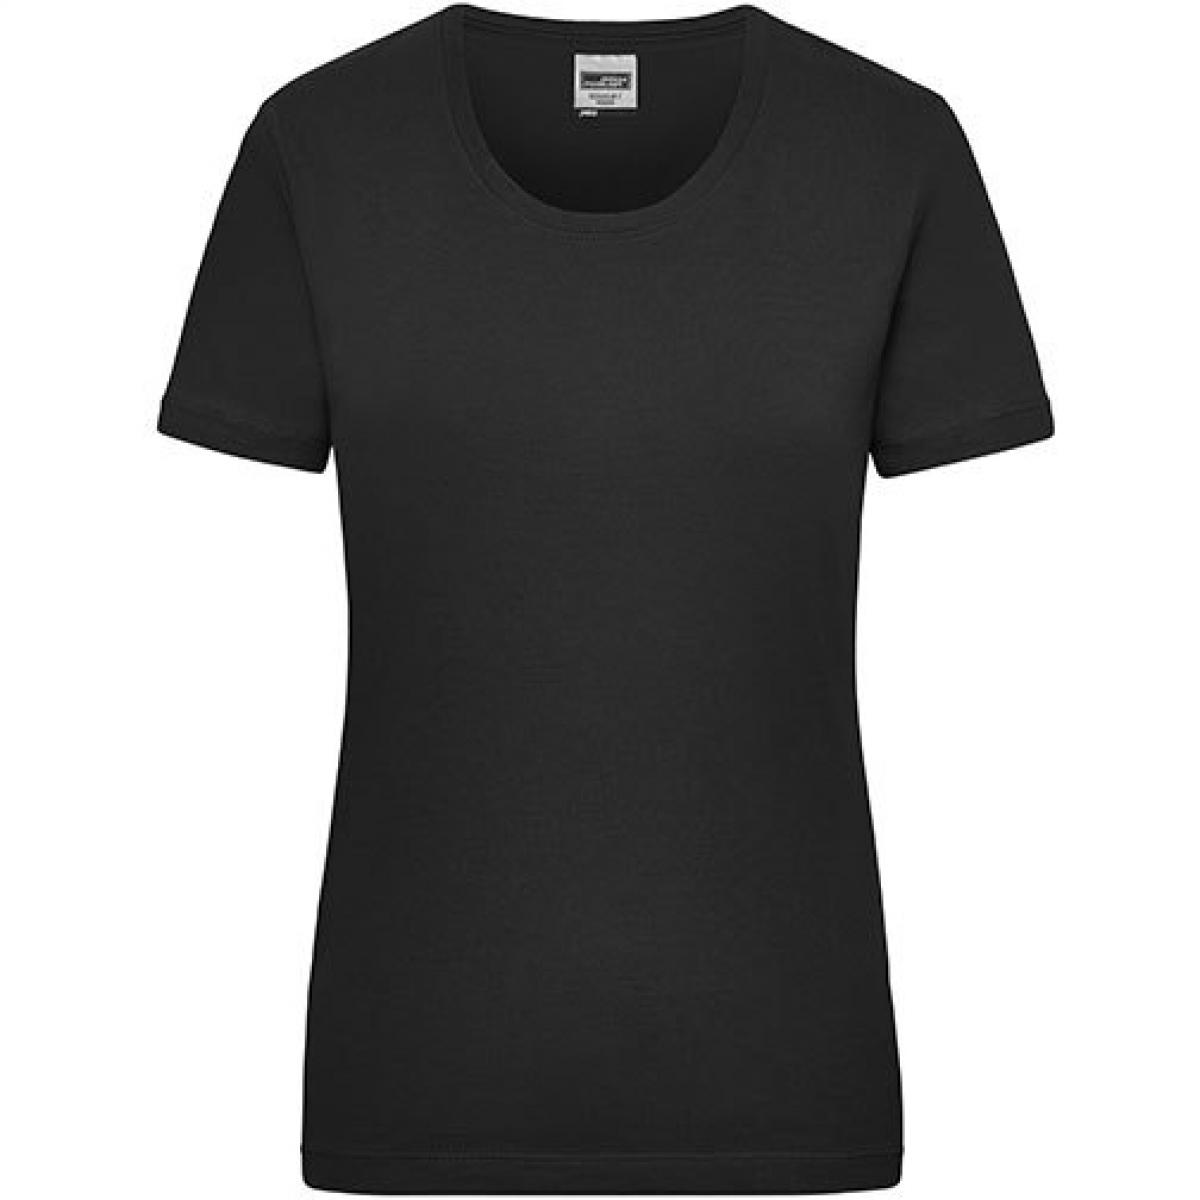 Hersteller: James+Nicholson Herstellernummer: JN 802 Artikelbezeichnung: Workwear-T Women Damen T-Shirt Farbe: Black